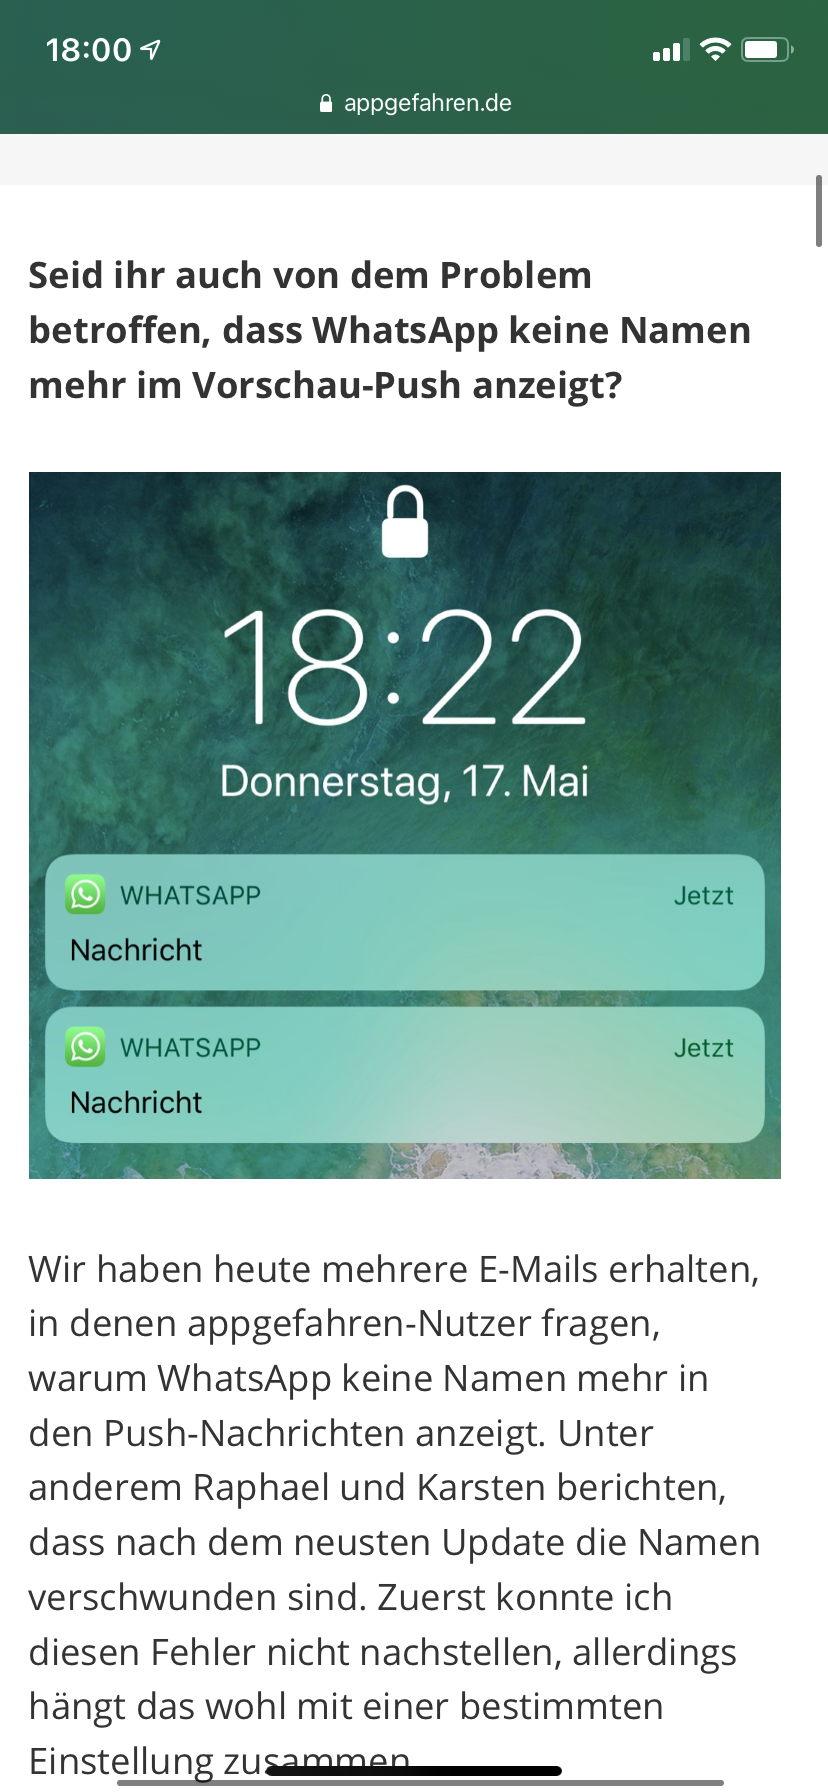 Whatsapp nickname wird nicht angezeigt blockiert